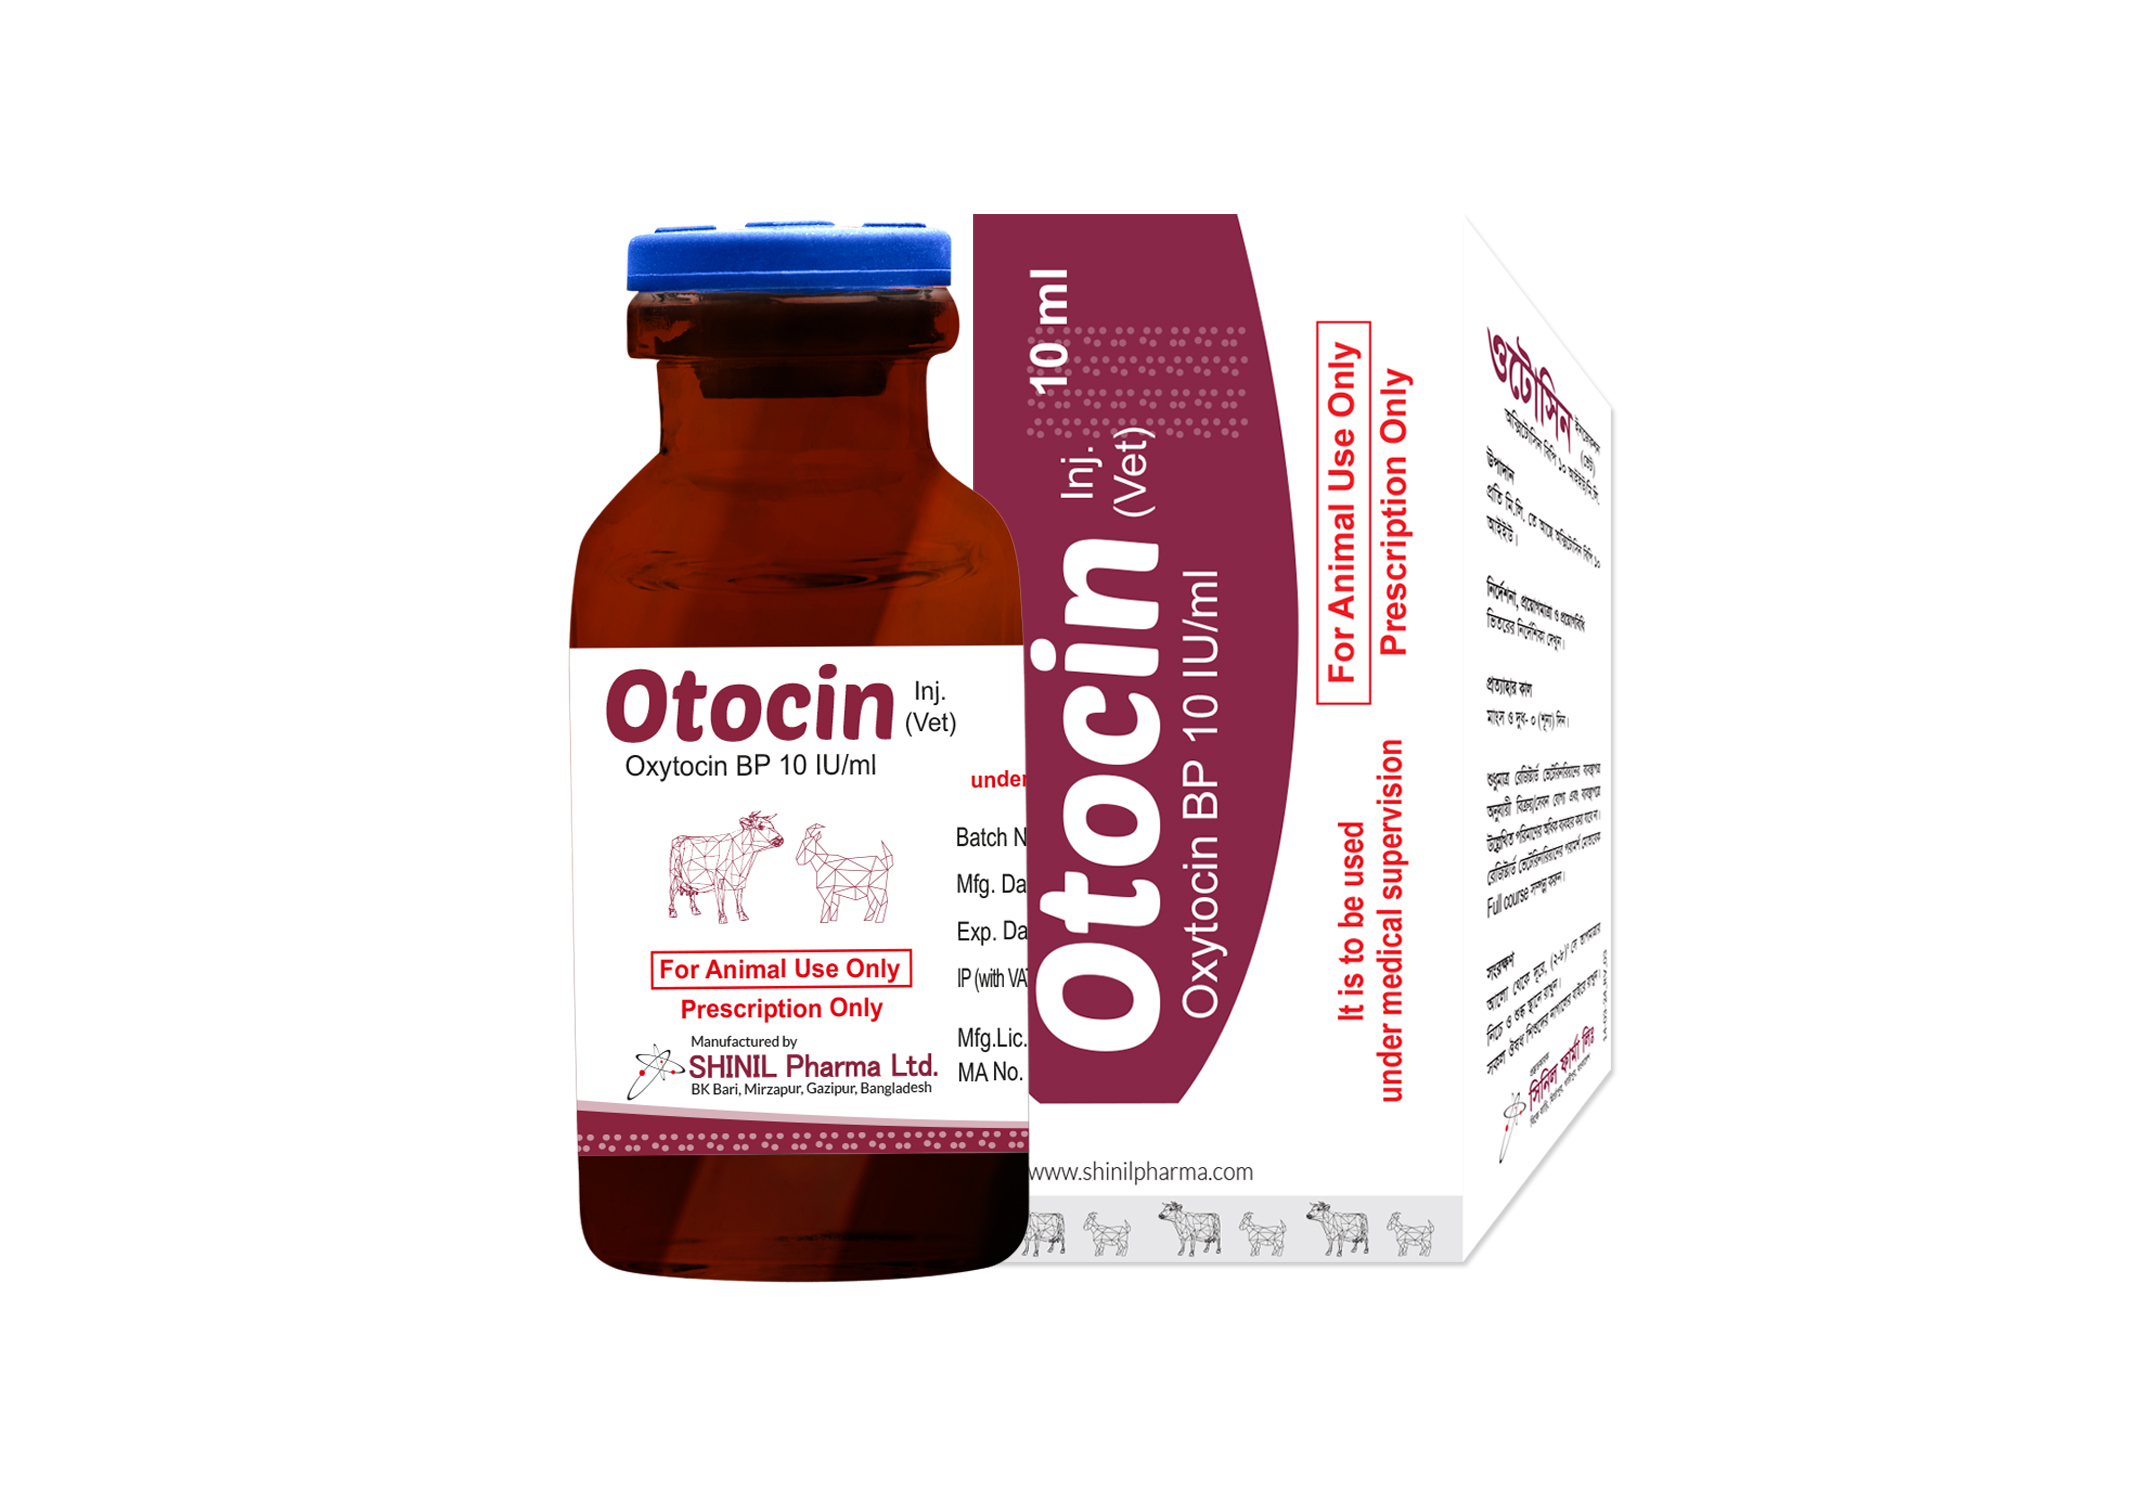 Otocin (Vet) Injection